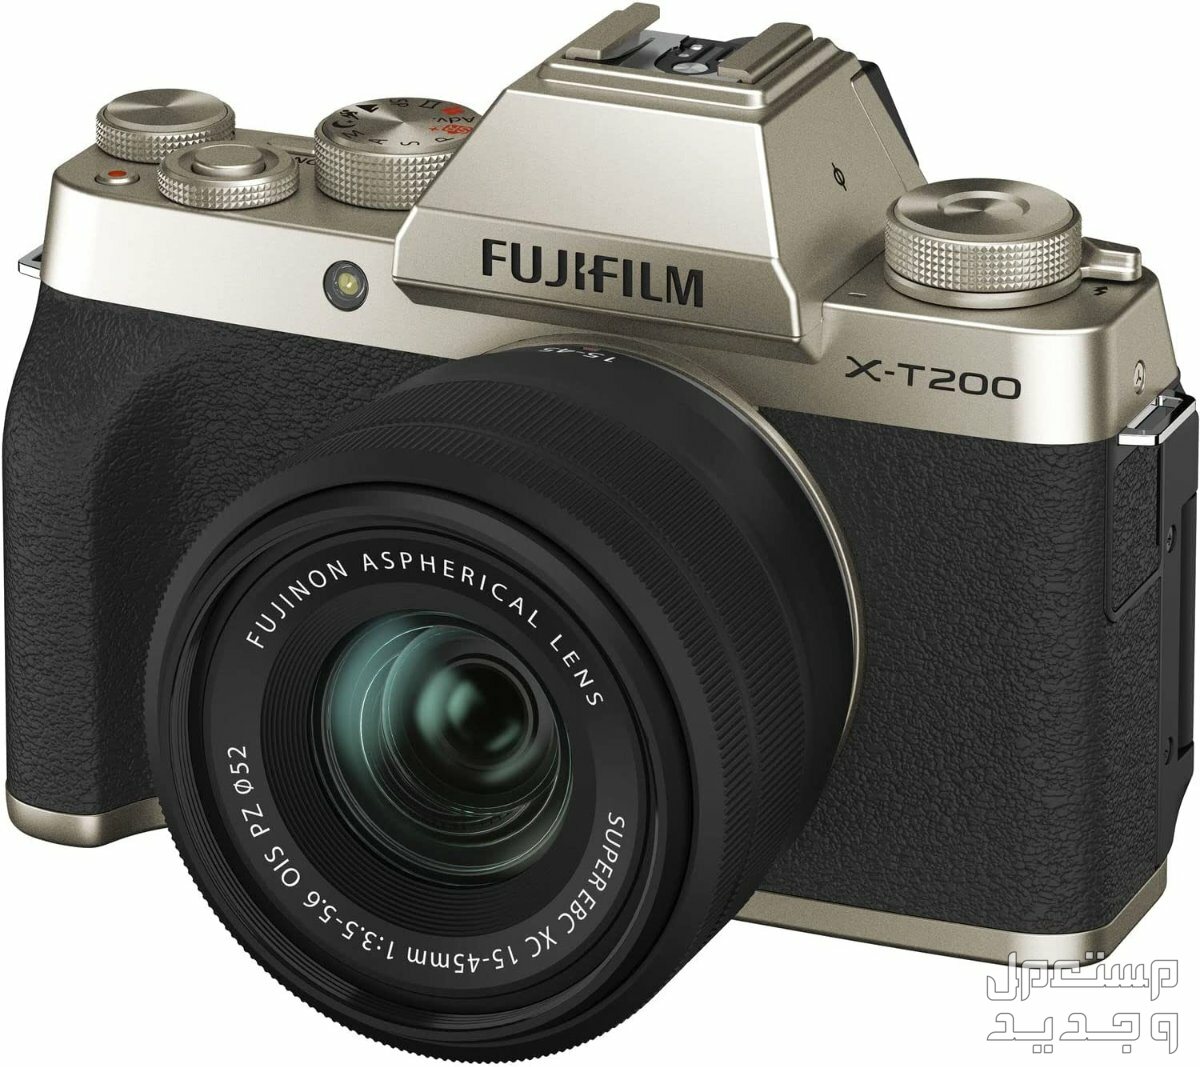 10 كاميرات تصوير ماركات عالمية بأسعار رخيصة في لبنان كاميرا Fujifilm X-T200